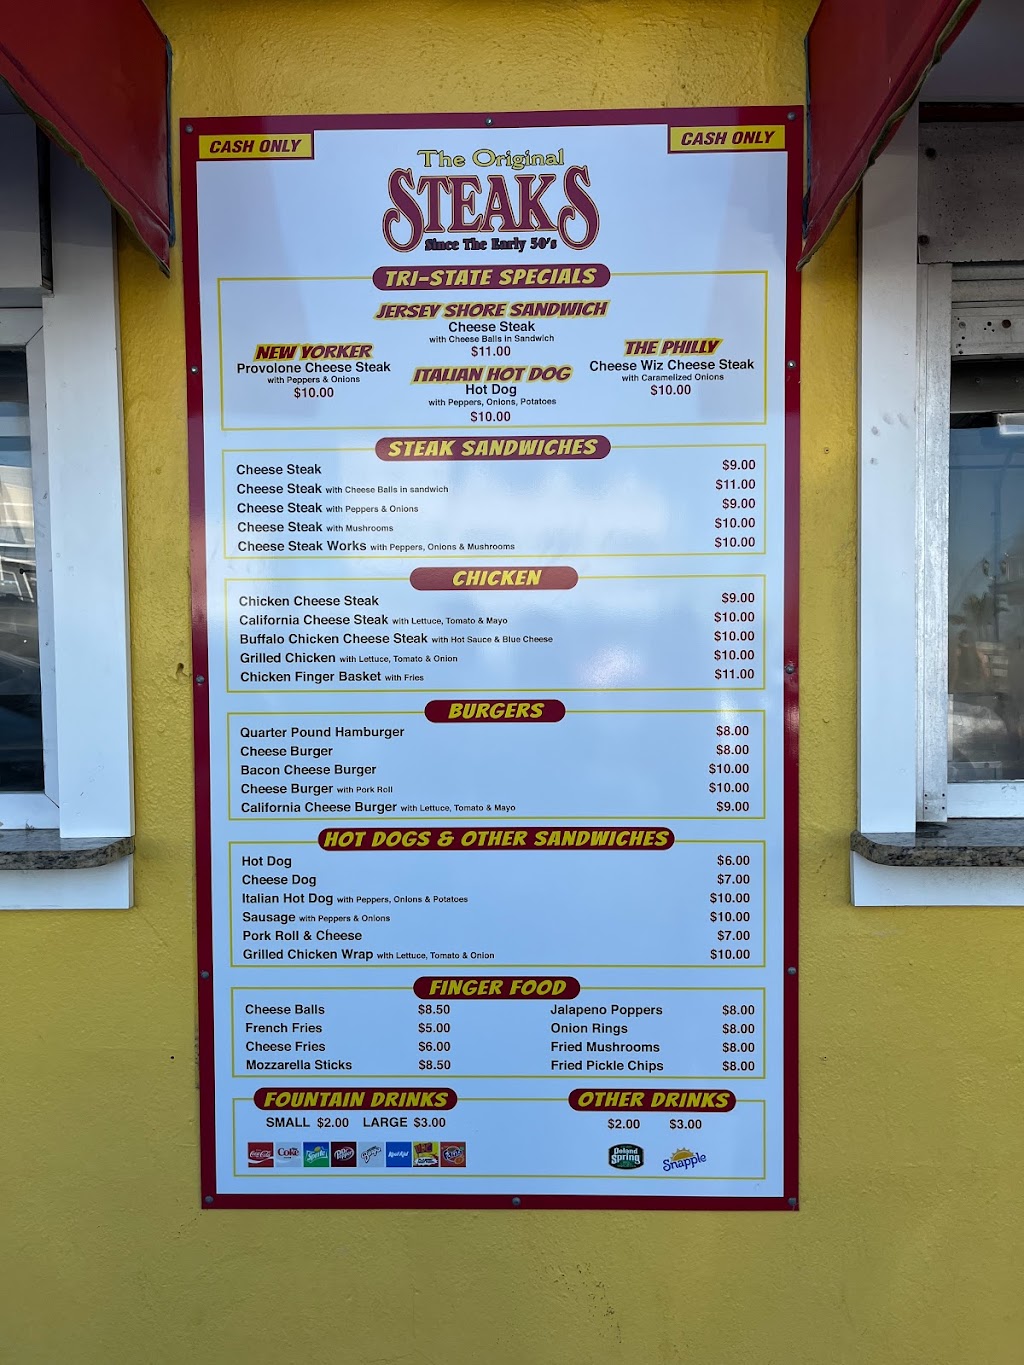 The Original Steaks | 21 Ocean Terrace, Seaside Heights, NJ 08751 | Phone: (843) 206-0452